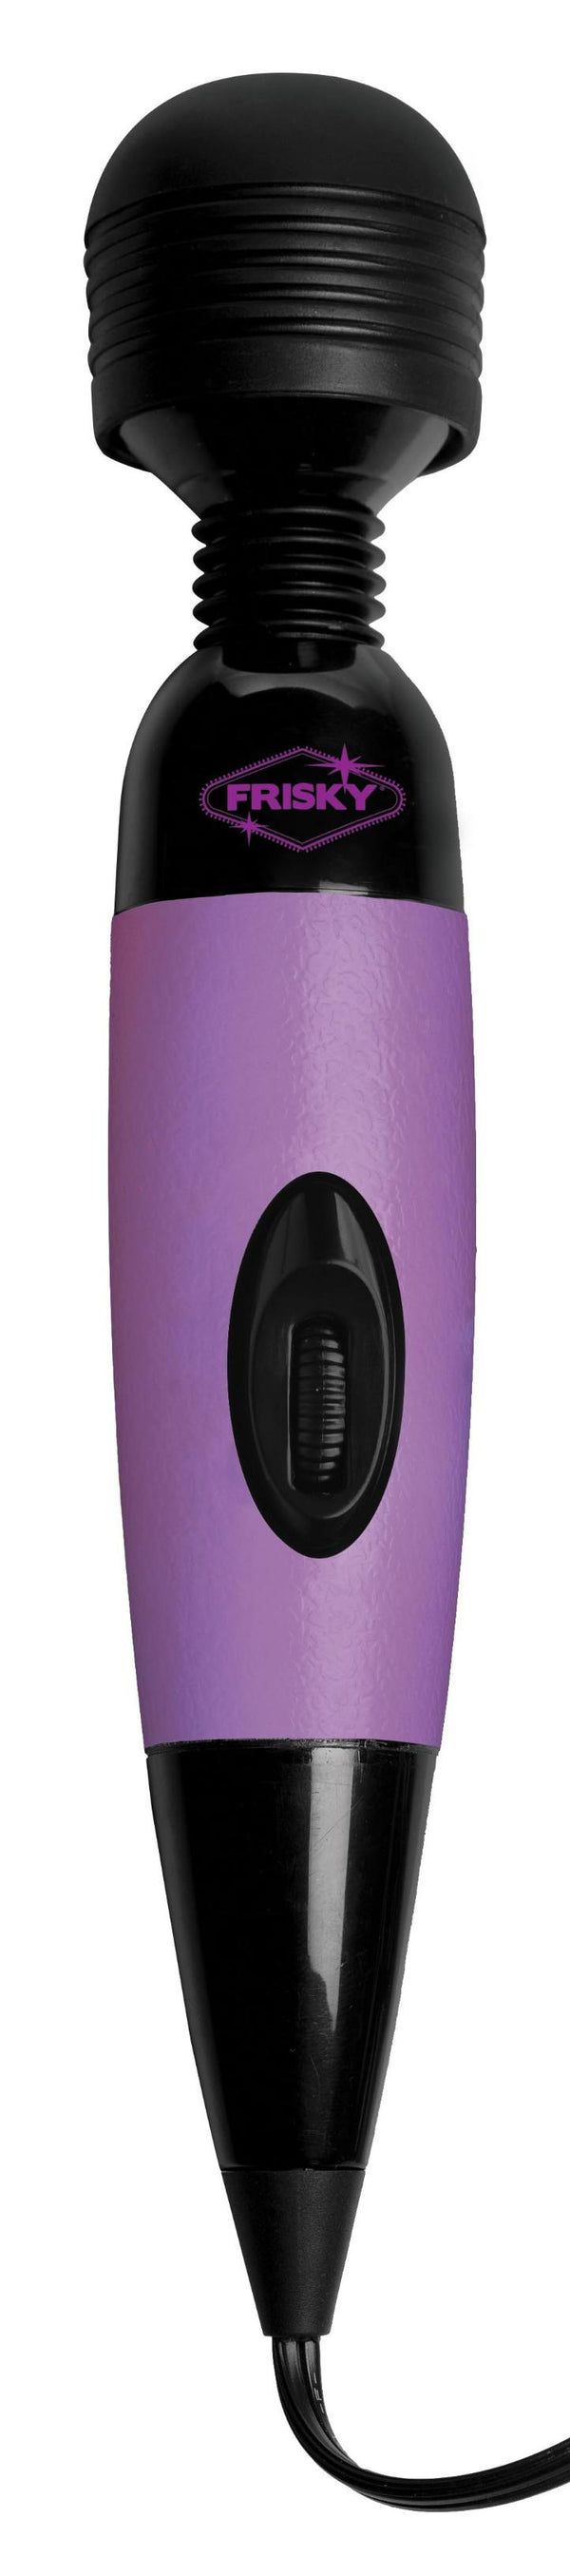 Playful Pleasure Multi-speed Vibrating Wand - Purple